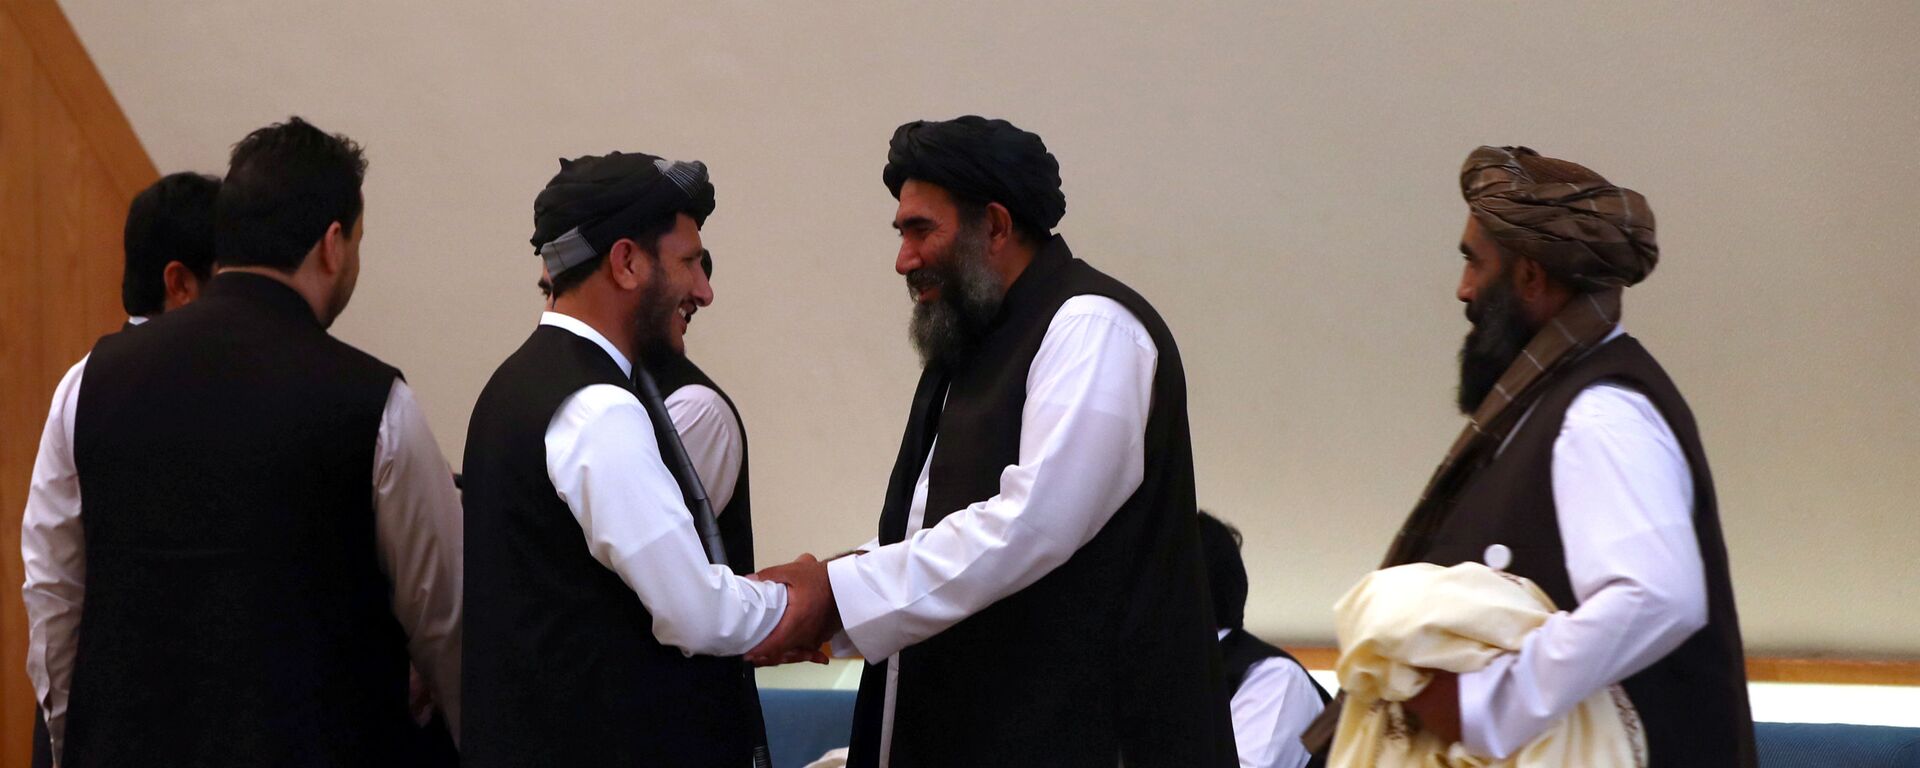 أعضاء وفد طالبان الأفغاني يجتمعون قبل توقيع اتفاق بينهم وبين المسؤولين الأميركيين في الدوحة - سبوتنيك عربي, 1920, 10.08.2021